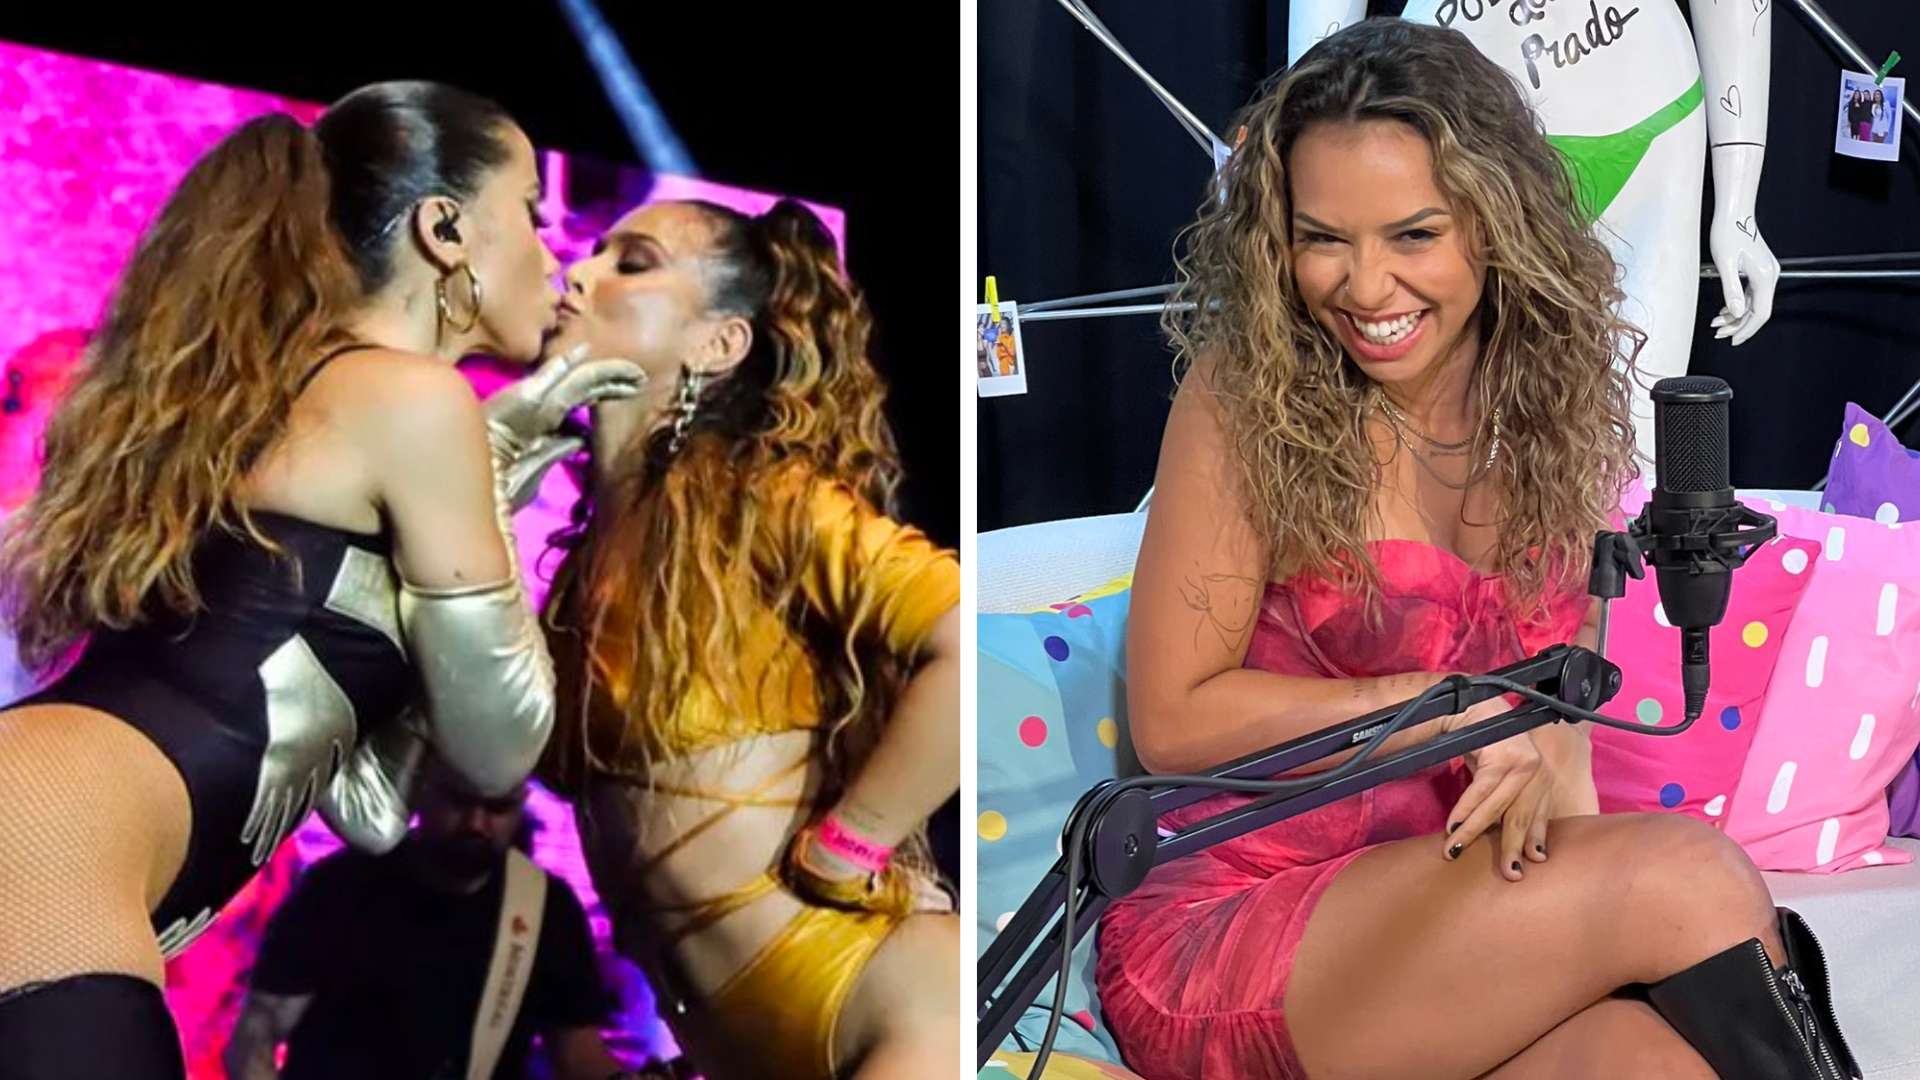 Bailarina de Anitta esquece que está ao vivo e diz já ter participado de sex* grupal com a cantora: “Surubão” - Metropolitana FM